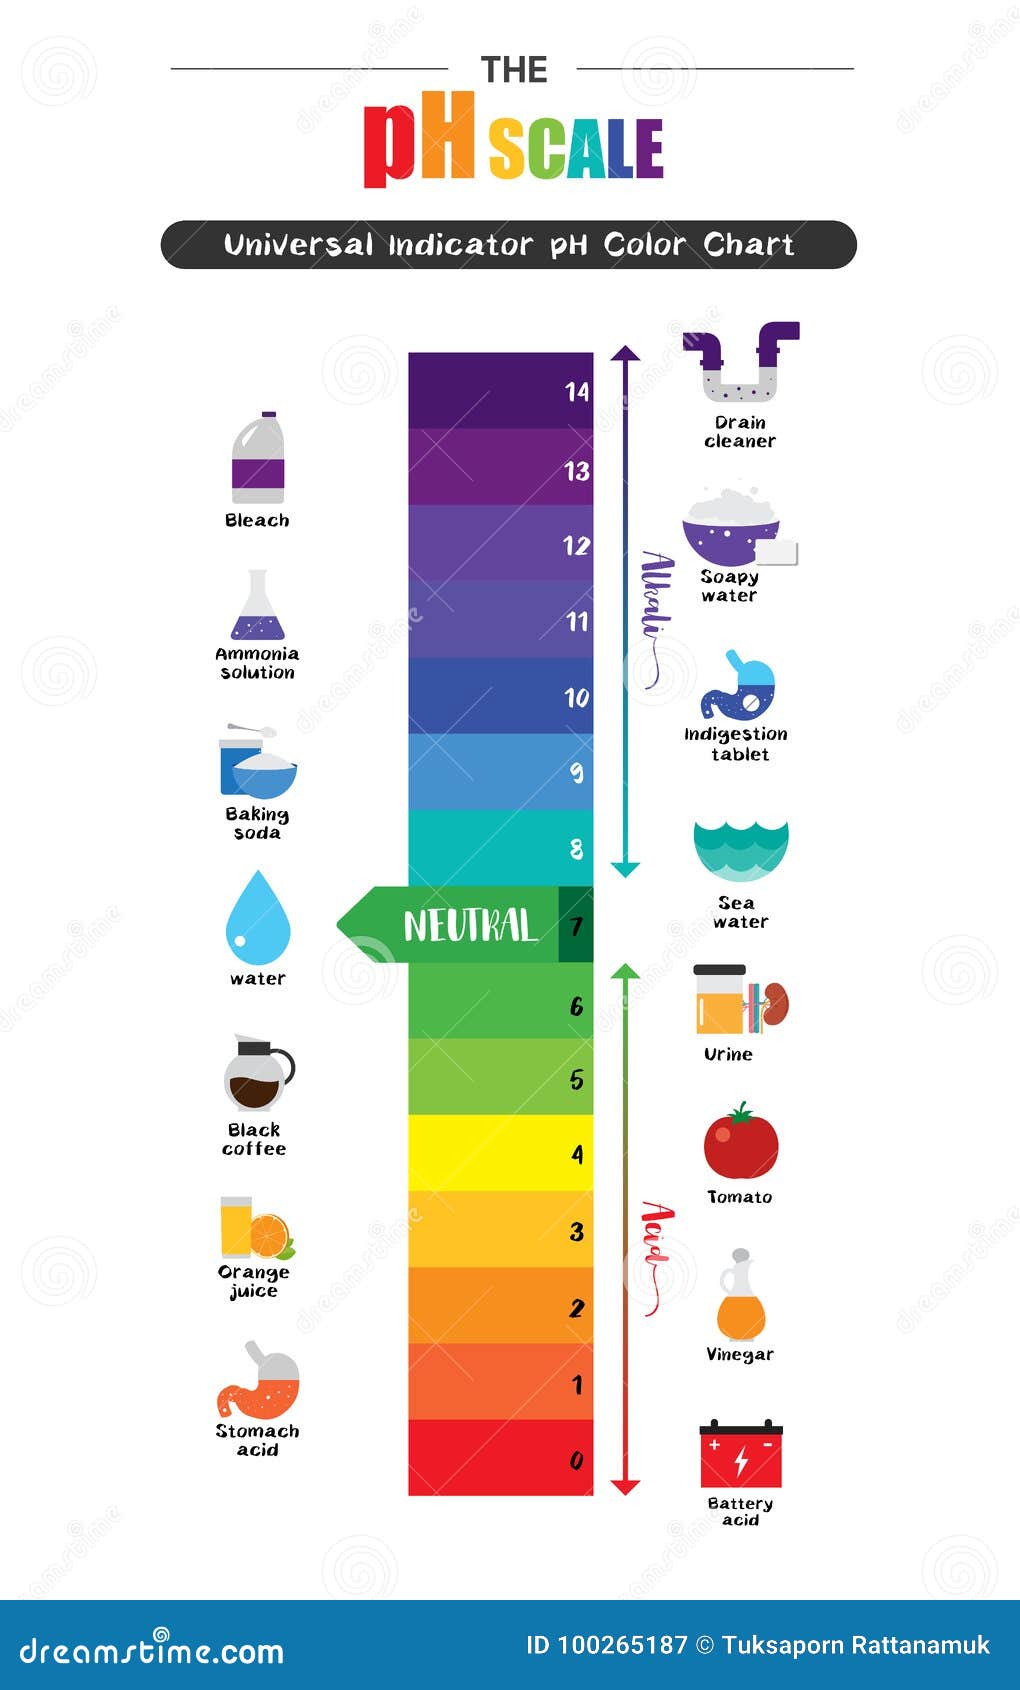 Acid Alkaline Chart